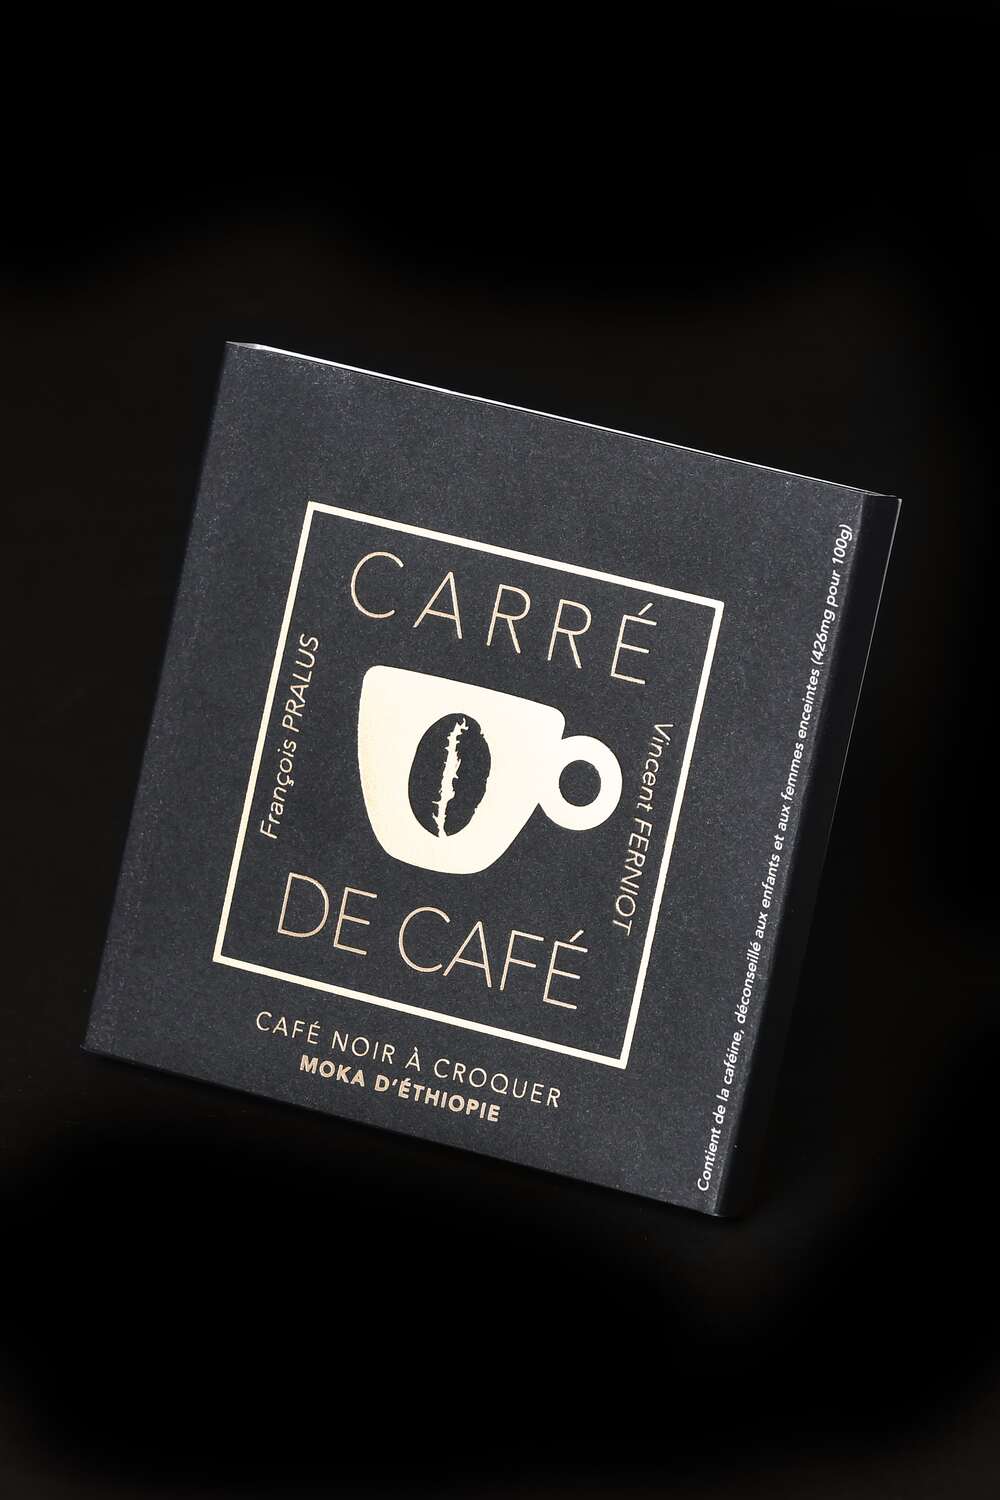 The Carrés de Café®